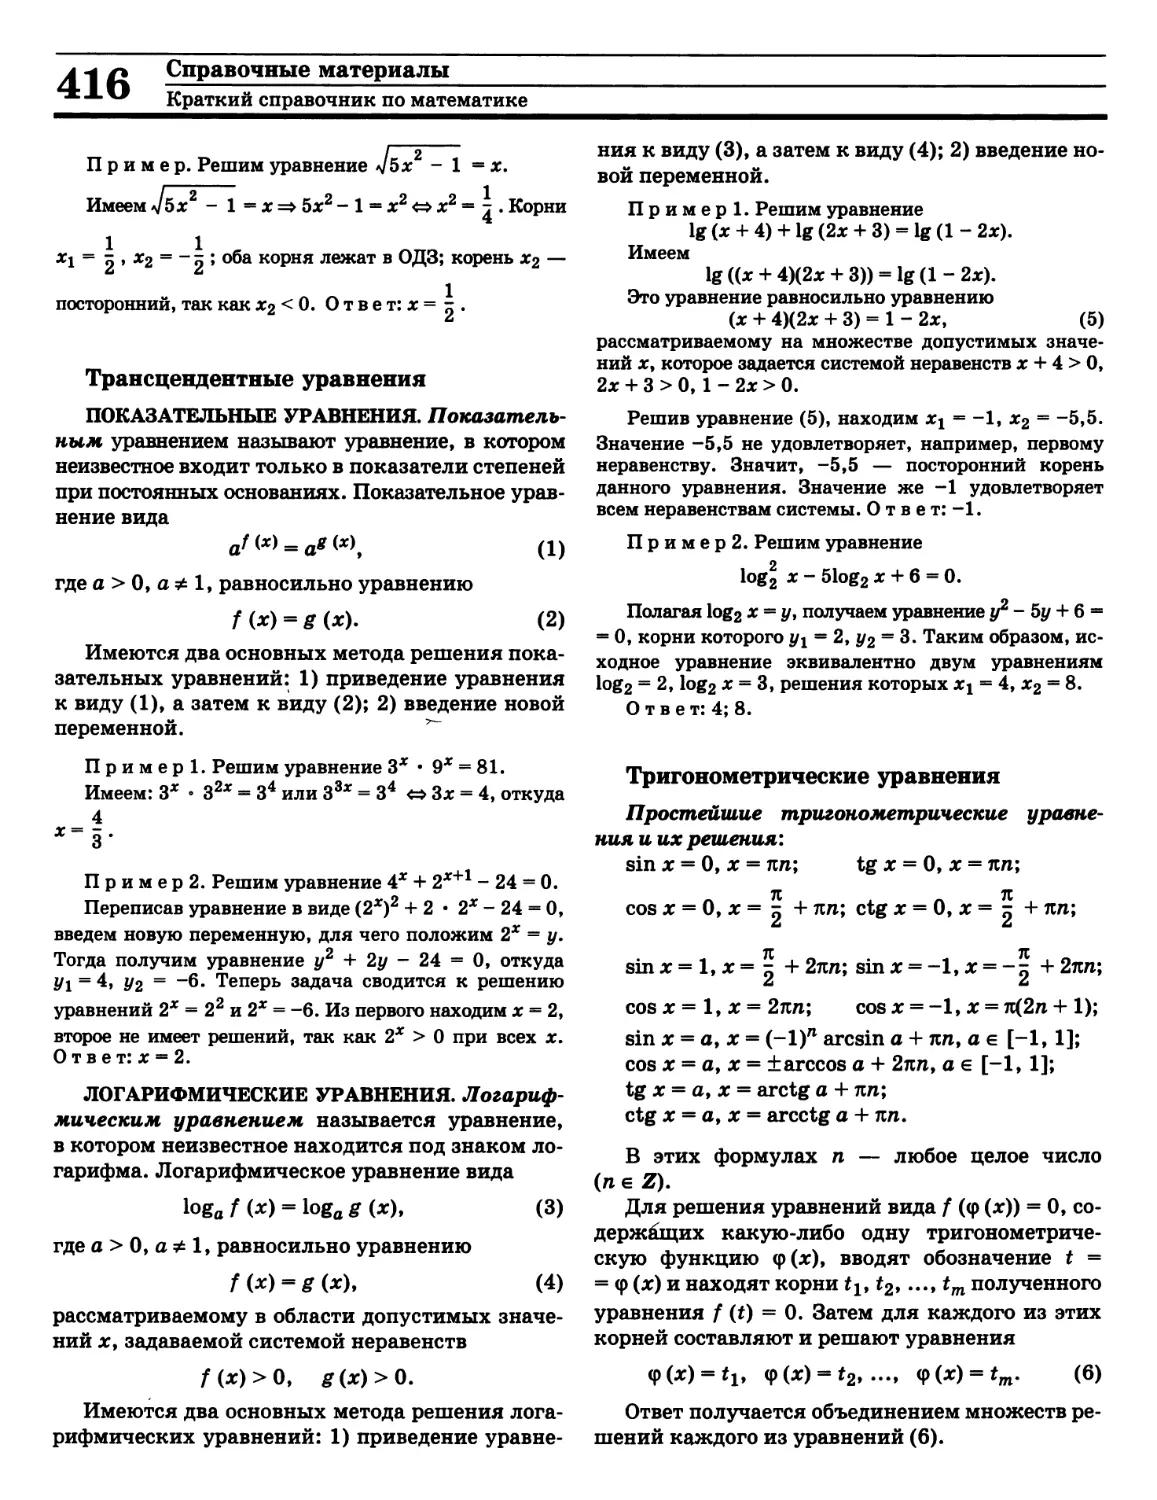 Тригонометрические уравнения
Уравнение логарифмическое
Уравнение показательное
Уравнение трансцендентное
Уравнение тригонометрическое